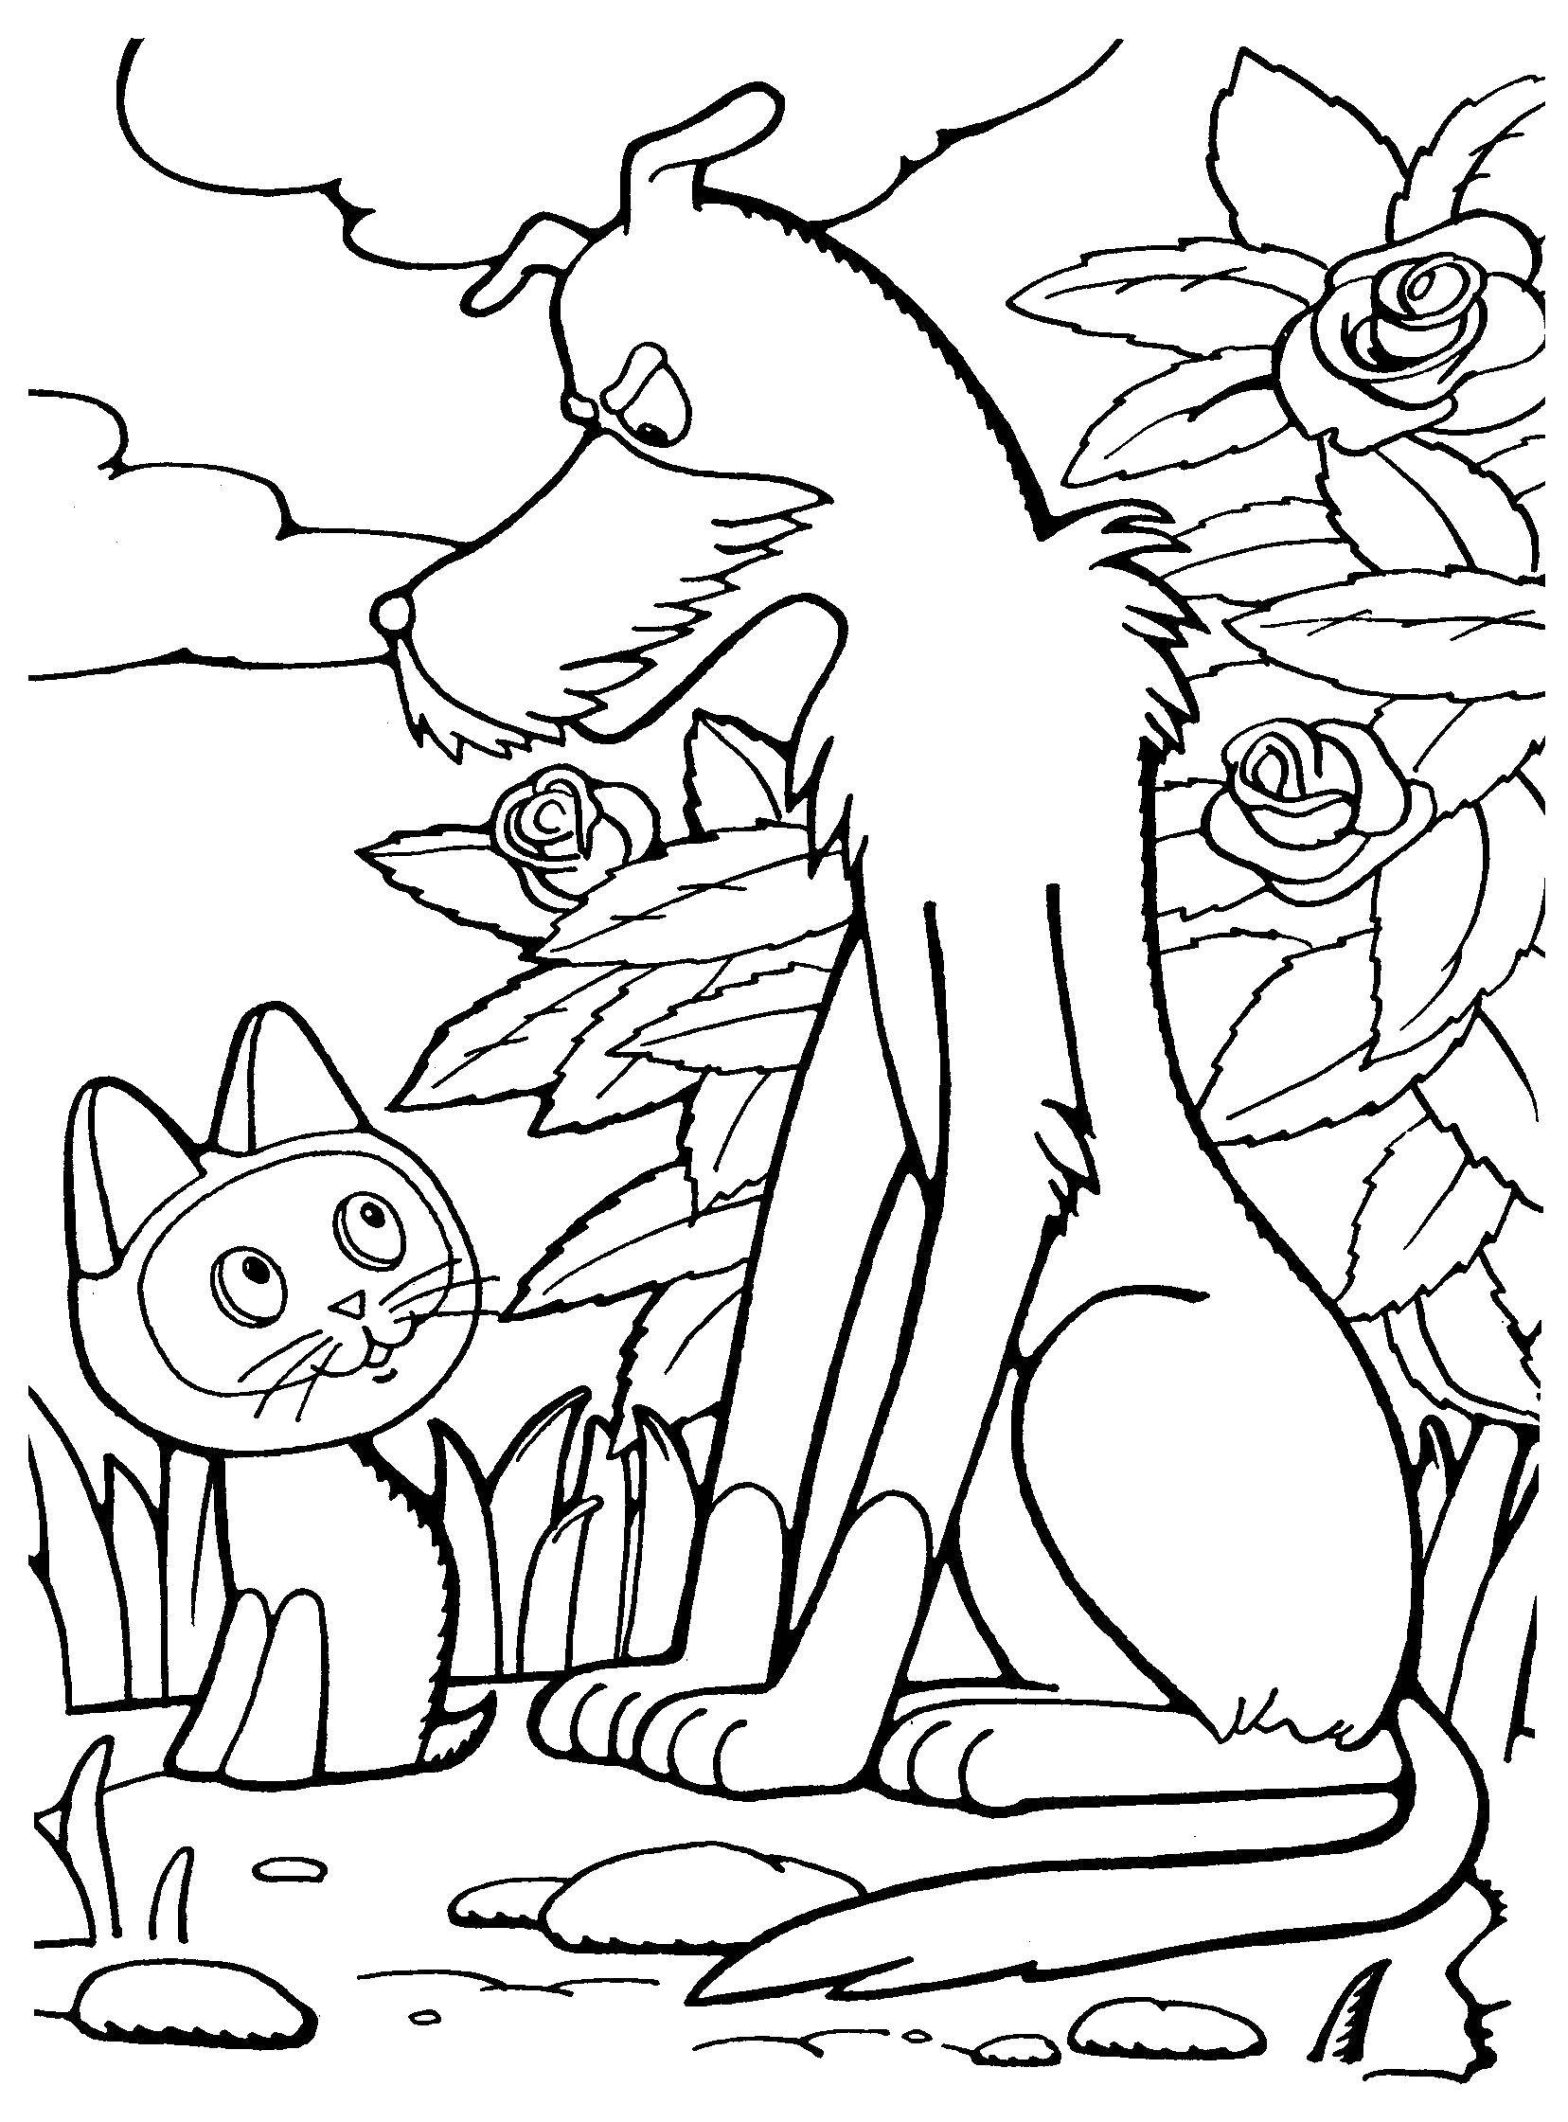 Раскраска котенок гав для малышей (котенок, гав, восприятие)